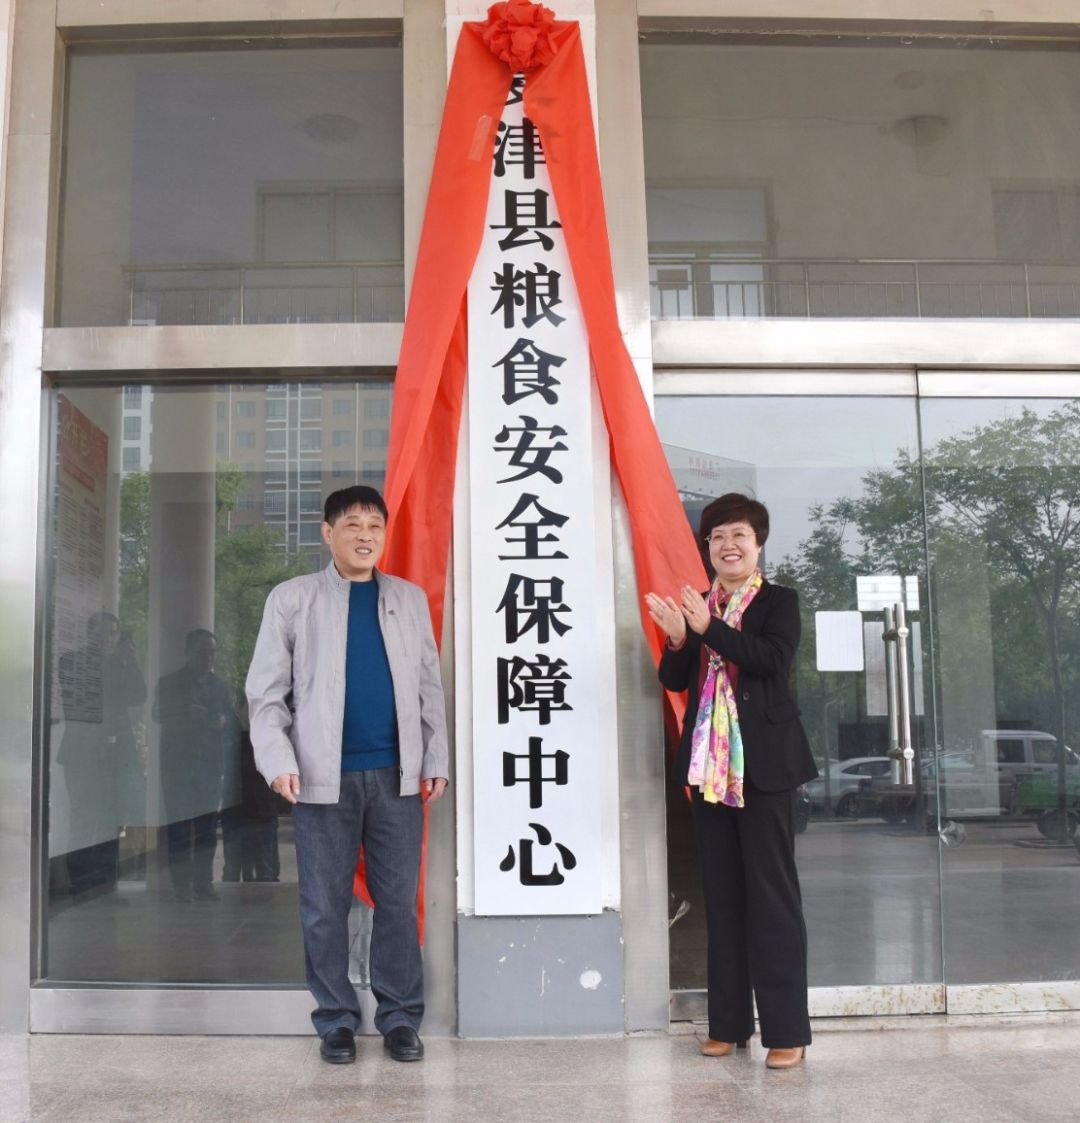 夏津县民营经济发展中心、粮食安全保障中心、